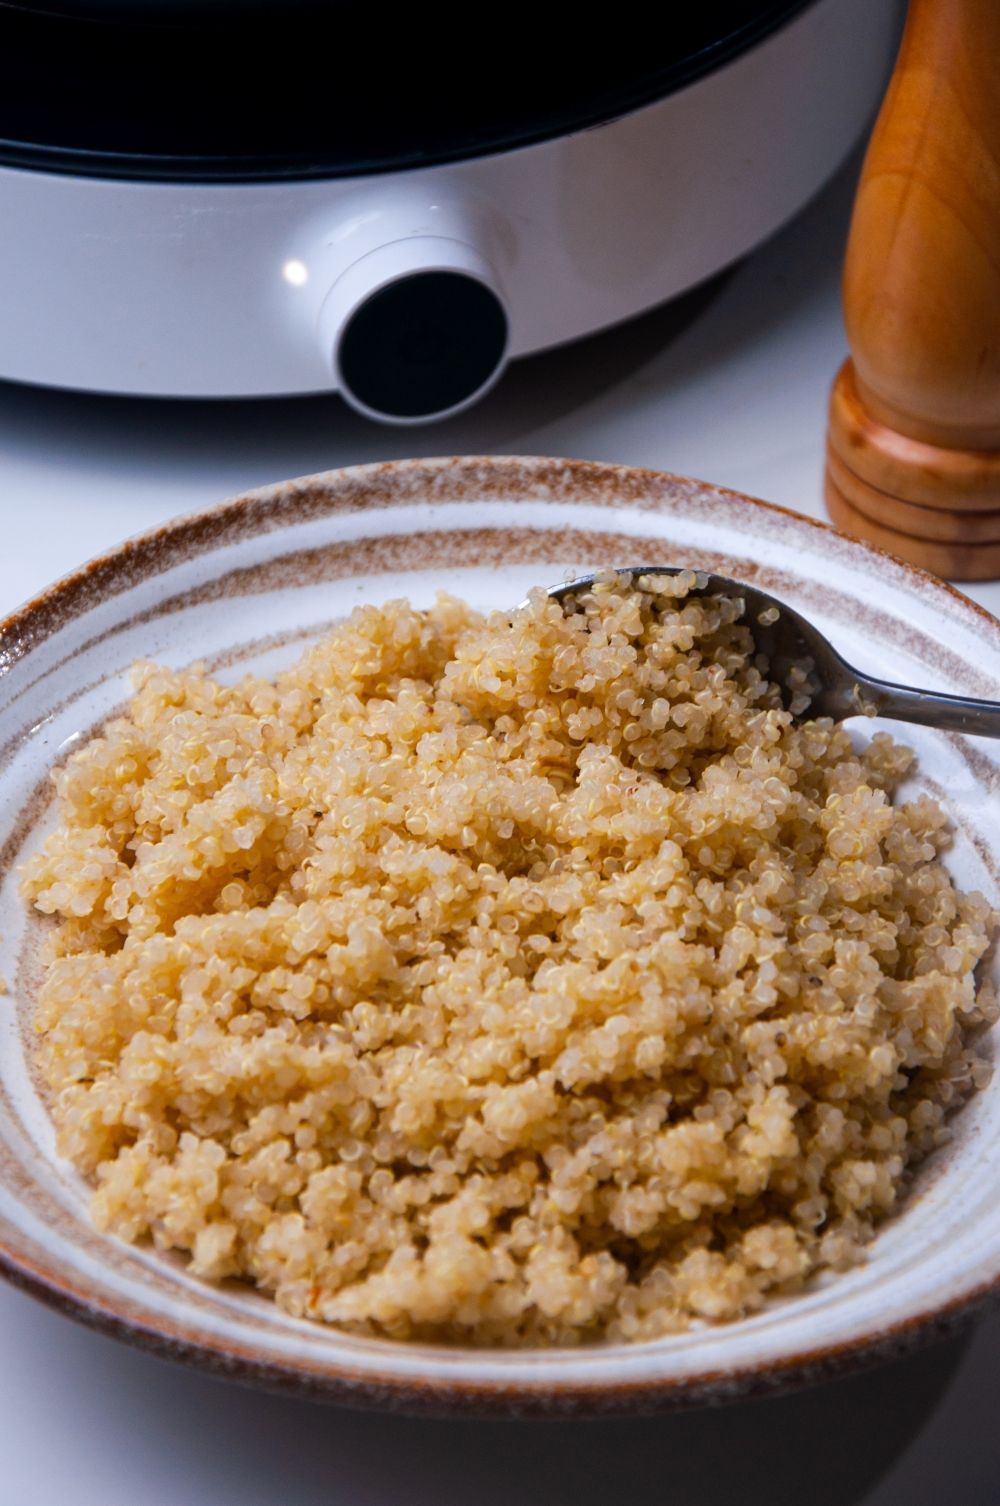 Setting aside the prepared quinoa